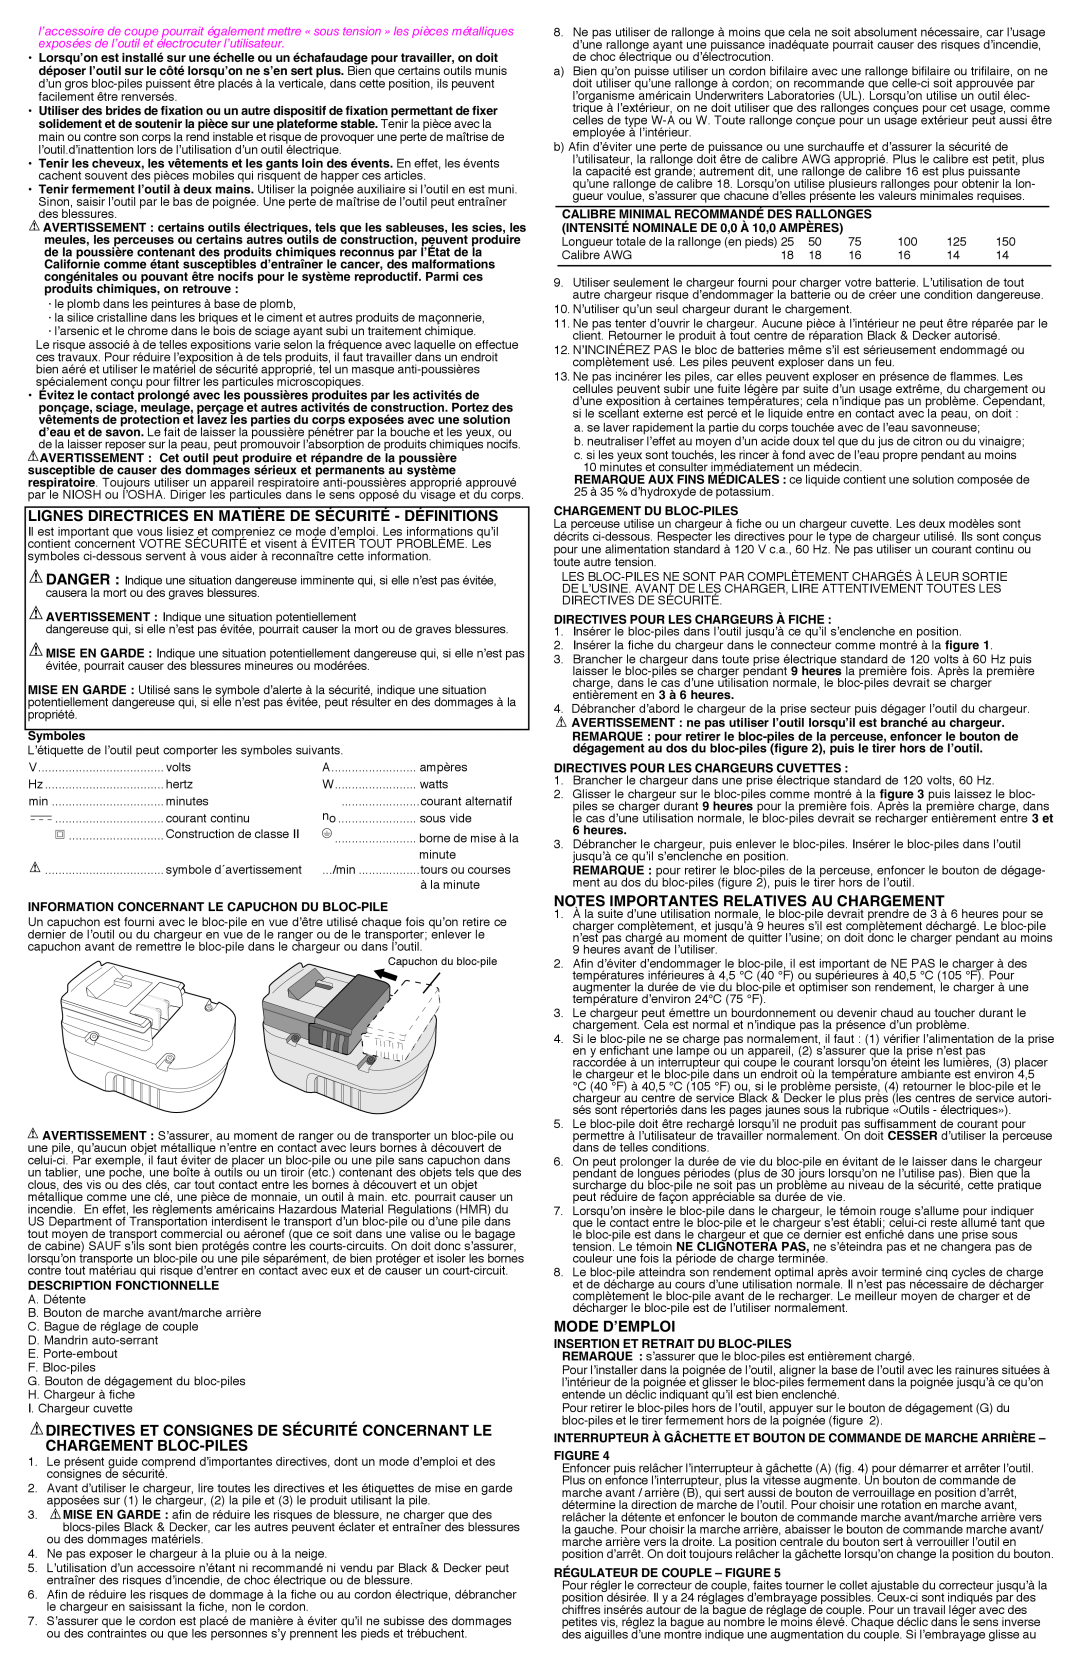 Black & Decker GCO2400 lignes directrices en matière de sécurité - définitions, Notes importantes relatives au chargement 